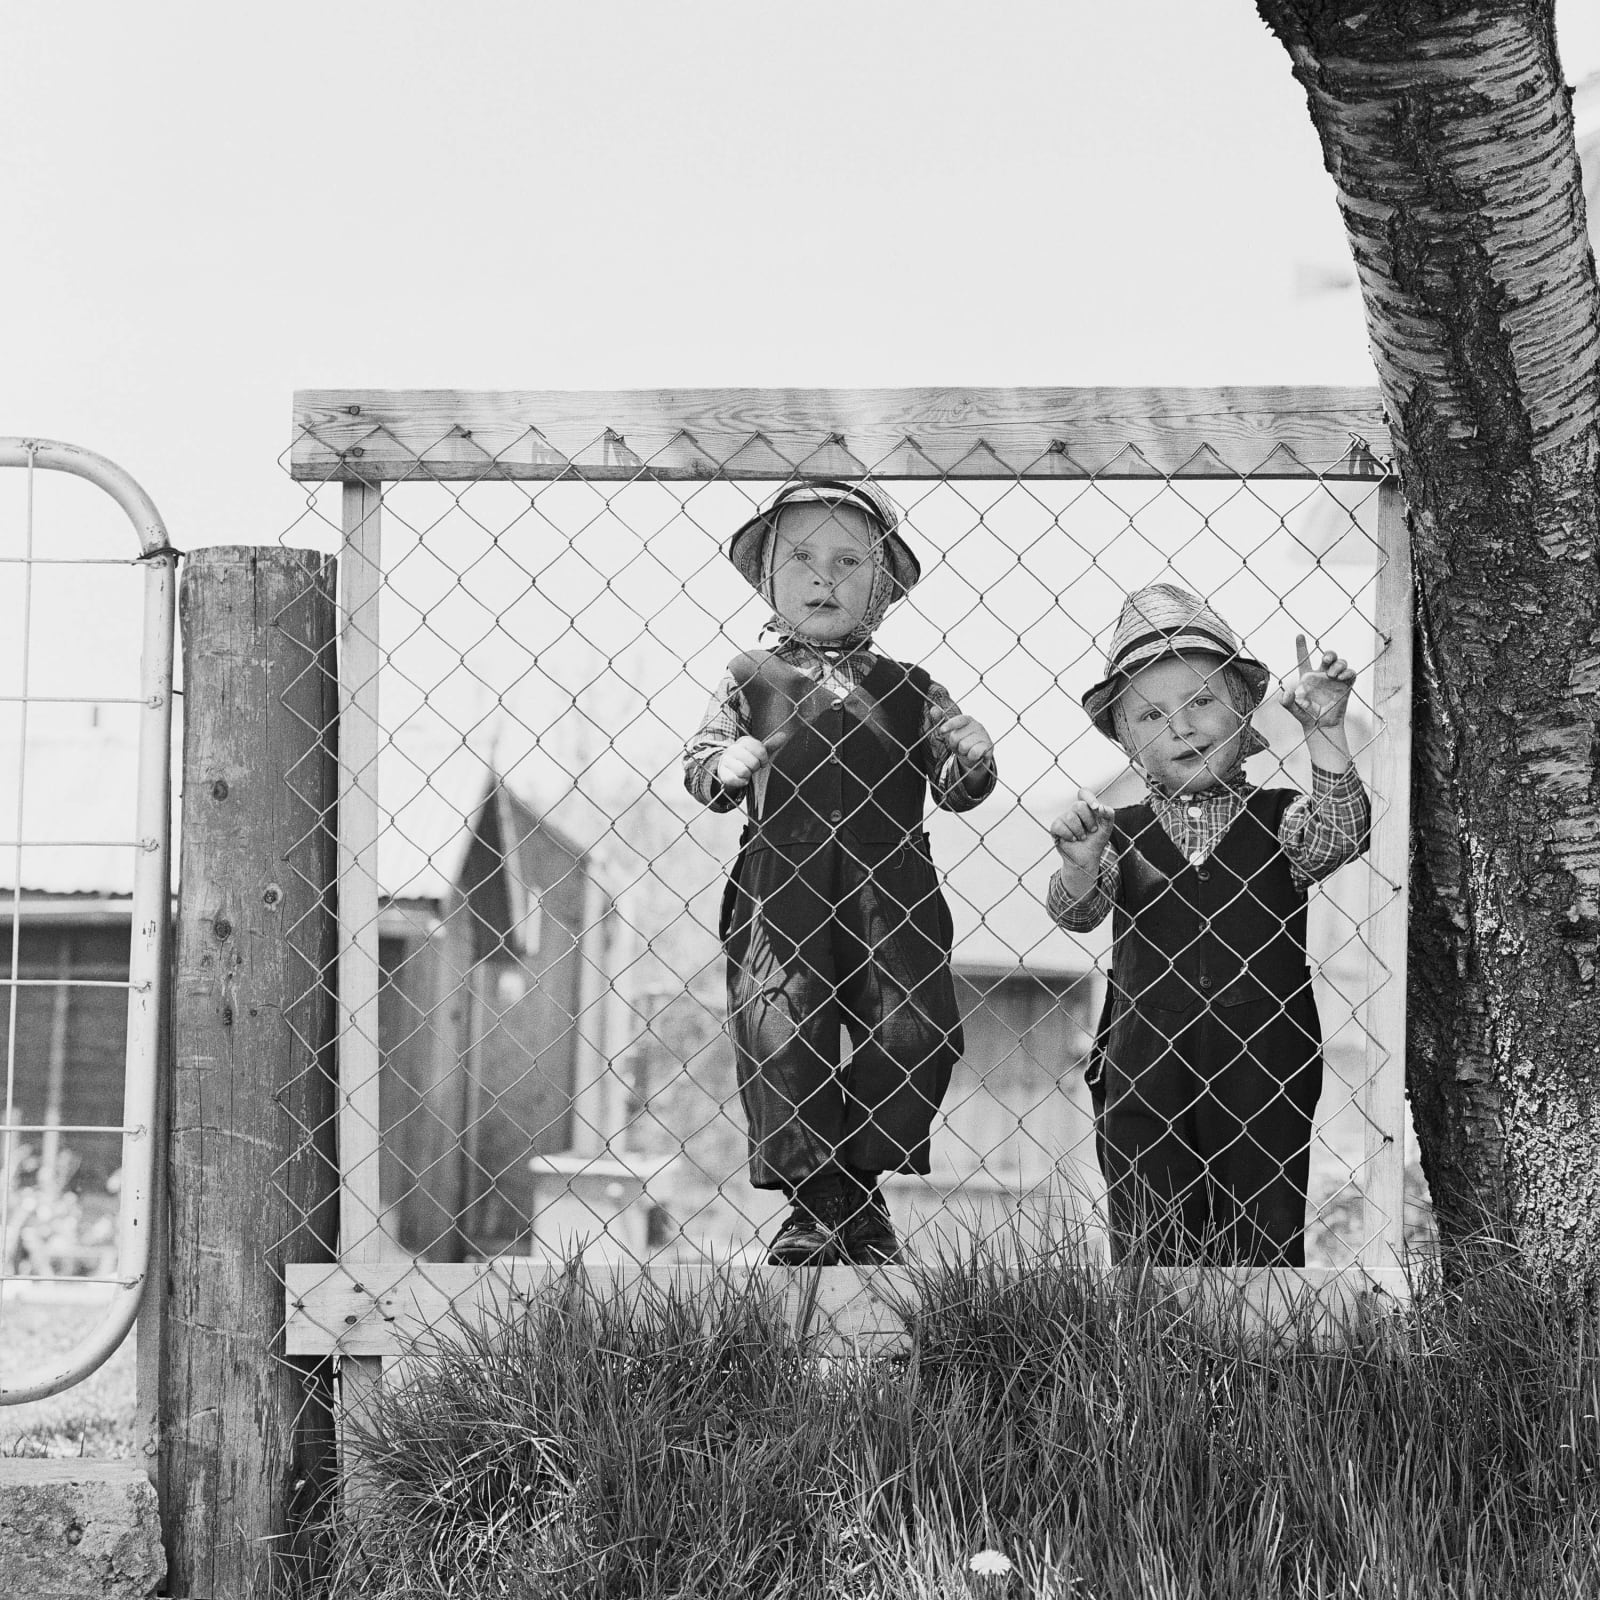 DAVID L. HUNSBERGER, Boys on Fence, 1967